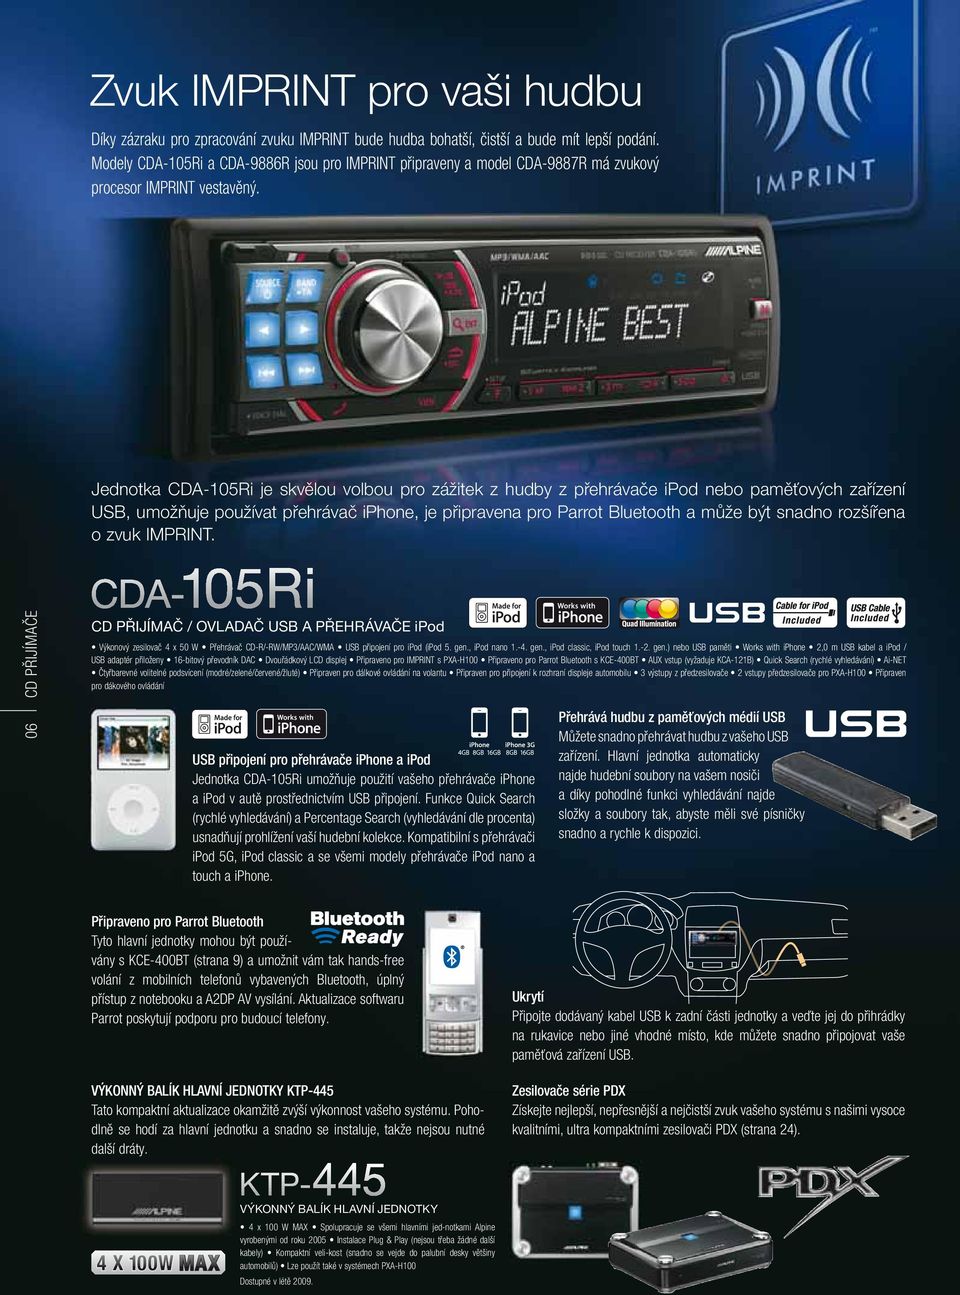 Jednotka CDA-105Ri je skvělou volbou pro zážitek z hudby z přehrávače ipod nebo paměťových zařízení USB, umožňuje používat přehrávač iphone, je připravena pro Parrot Bluetooth a může být snadno